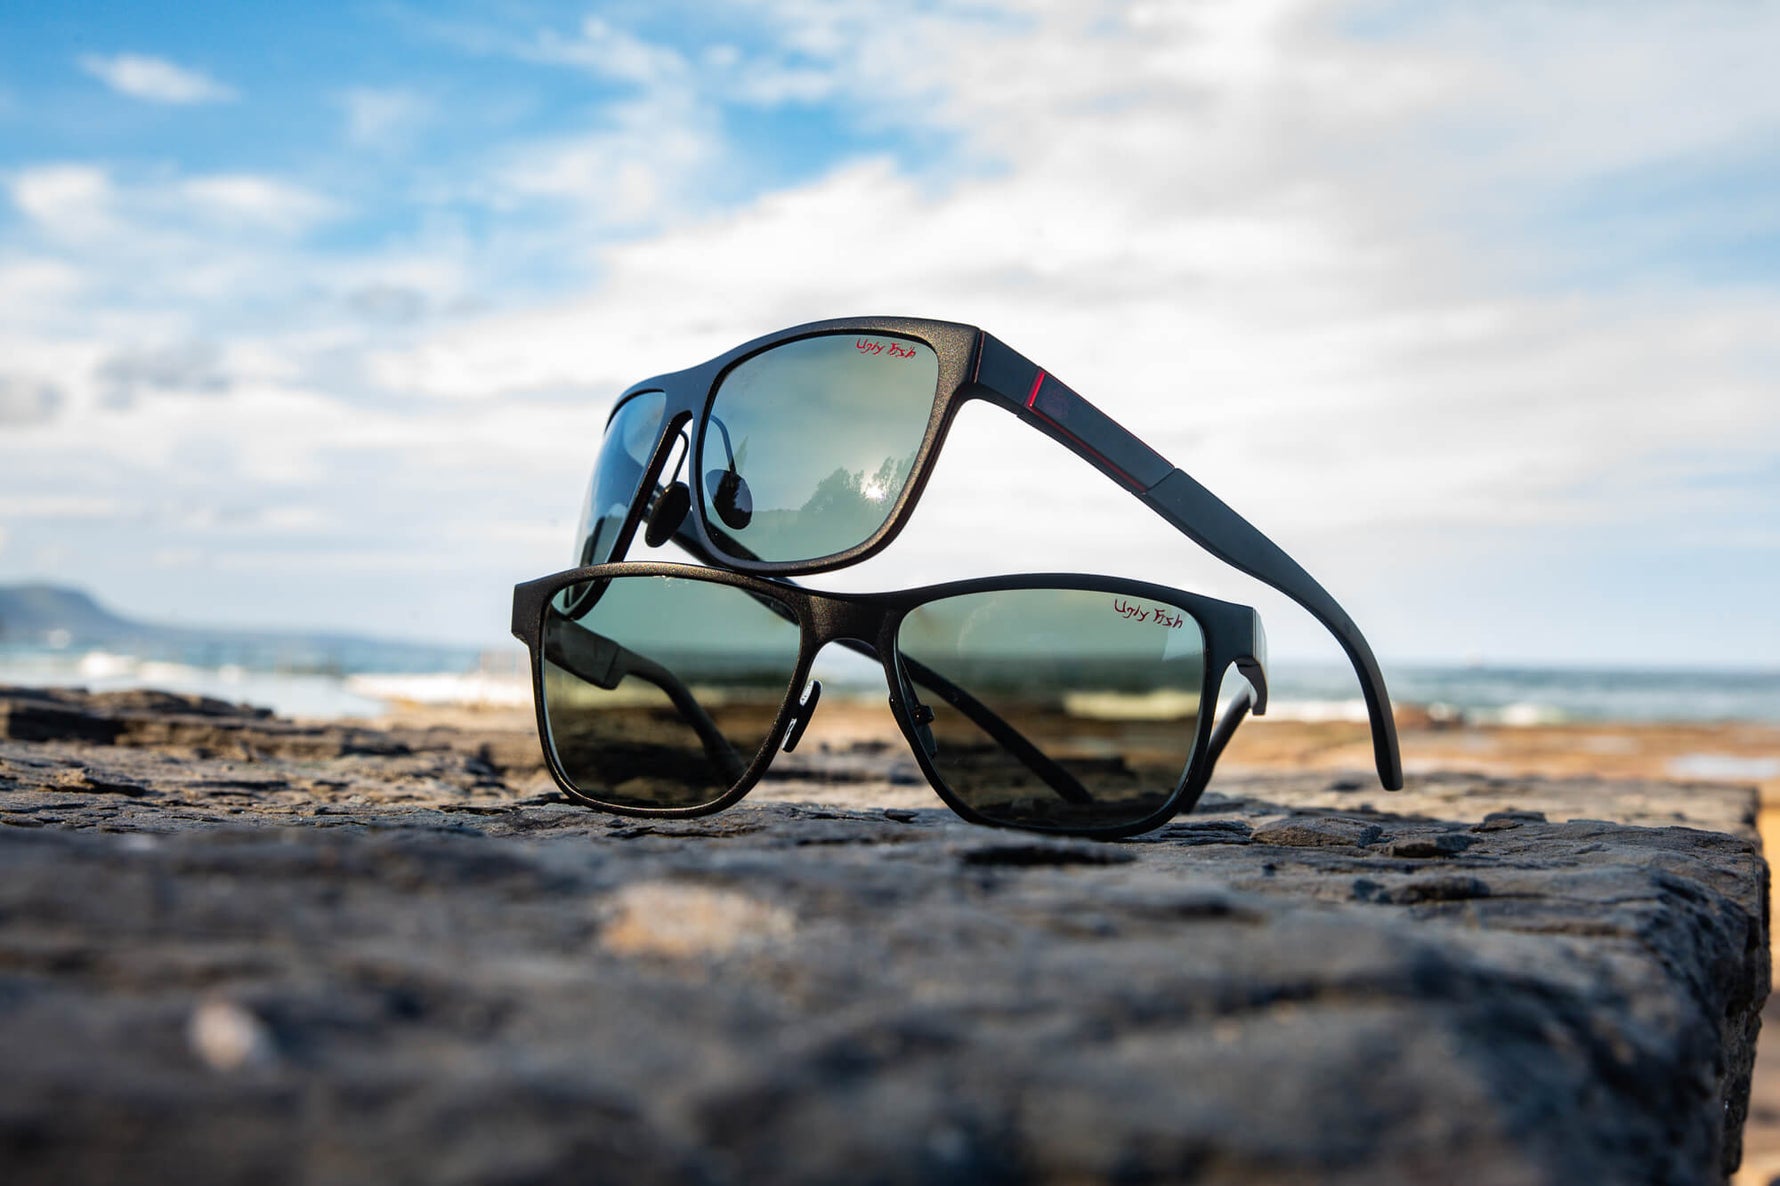 Ugly Fish Eyewear | Buy Polarised + Safety Sunglasses Online Australia